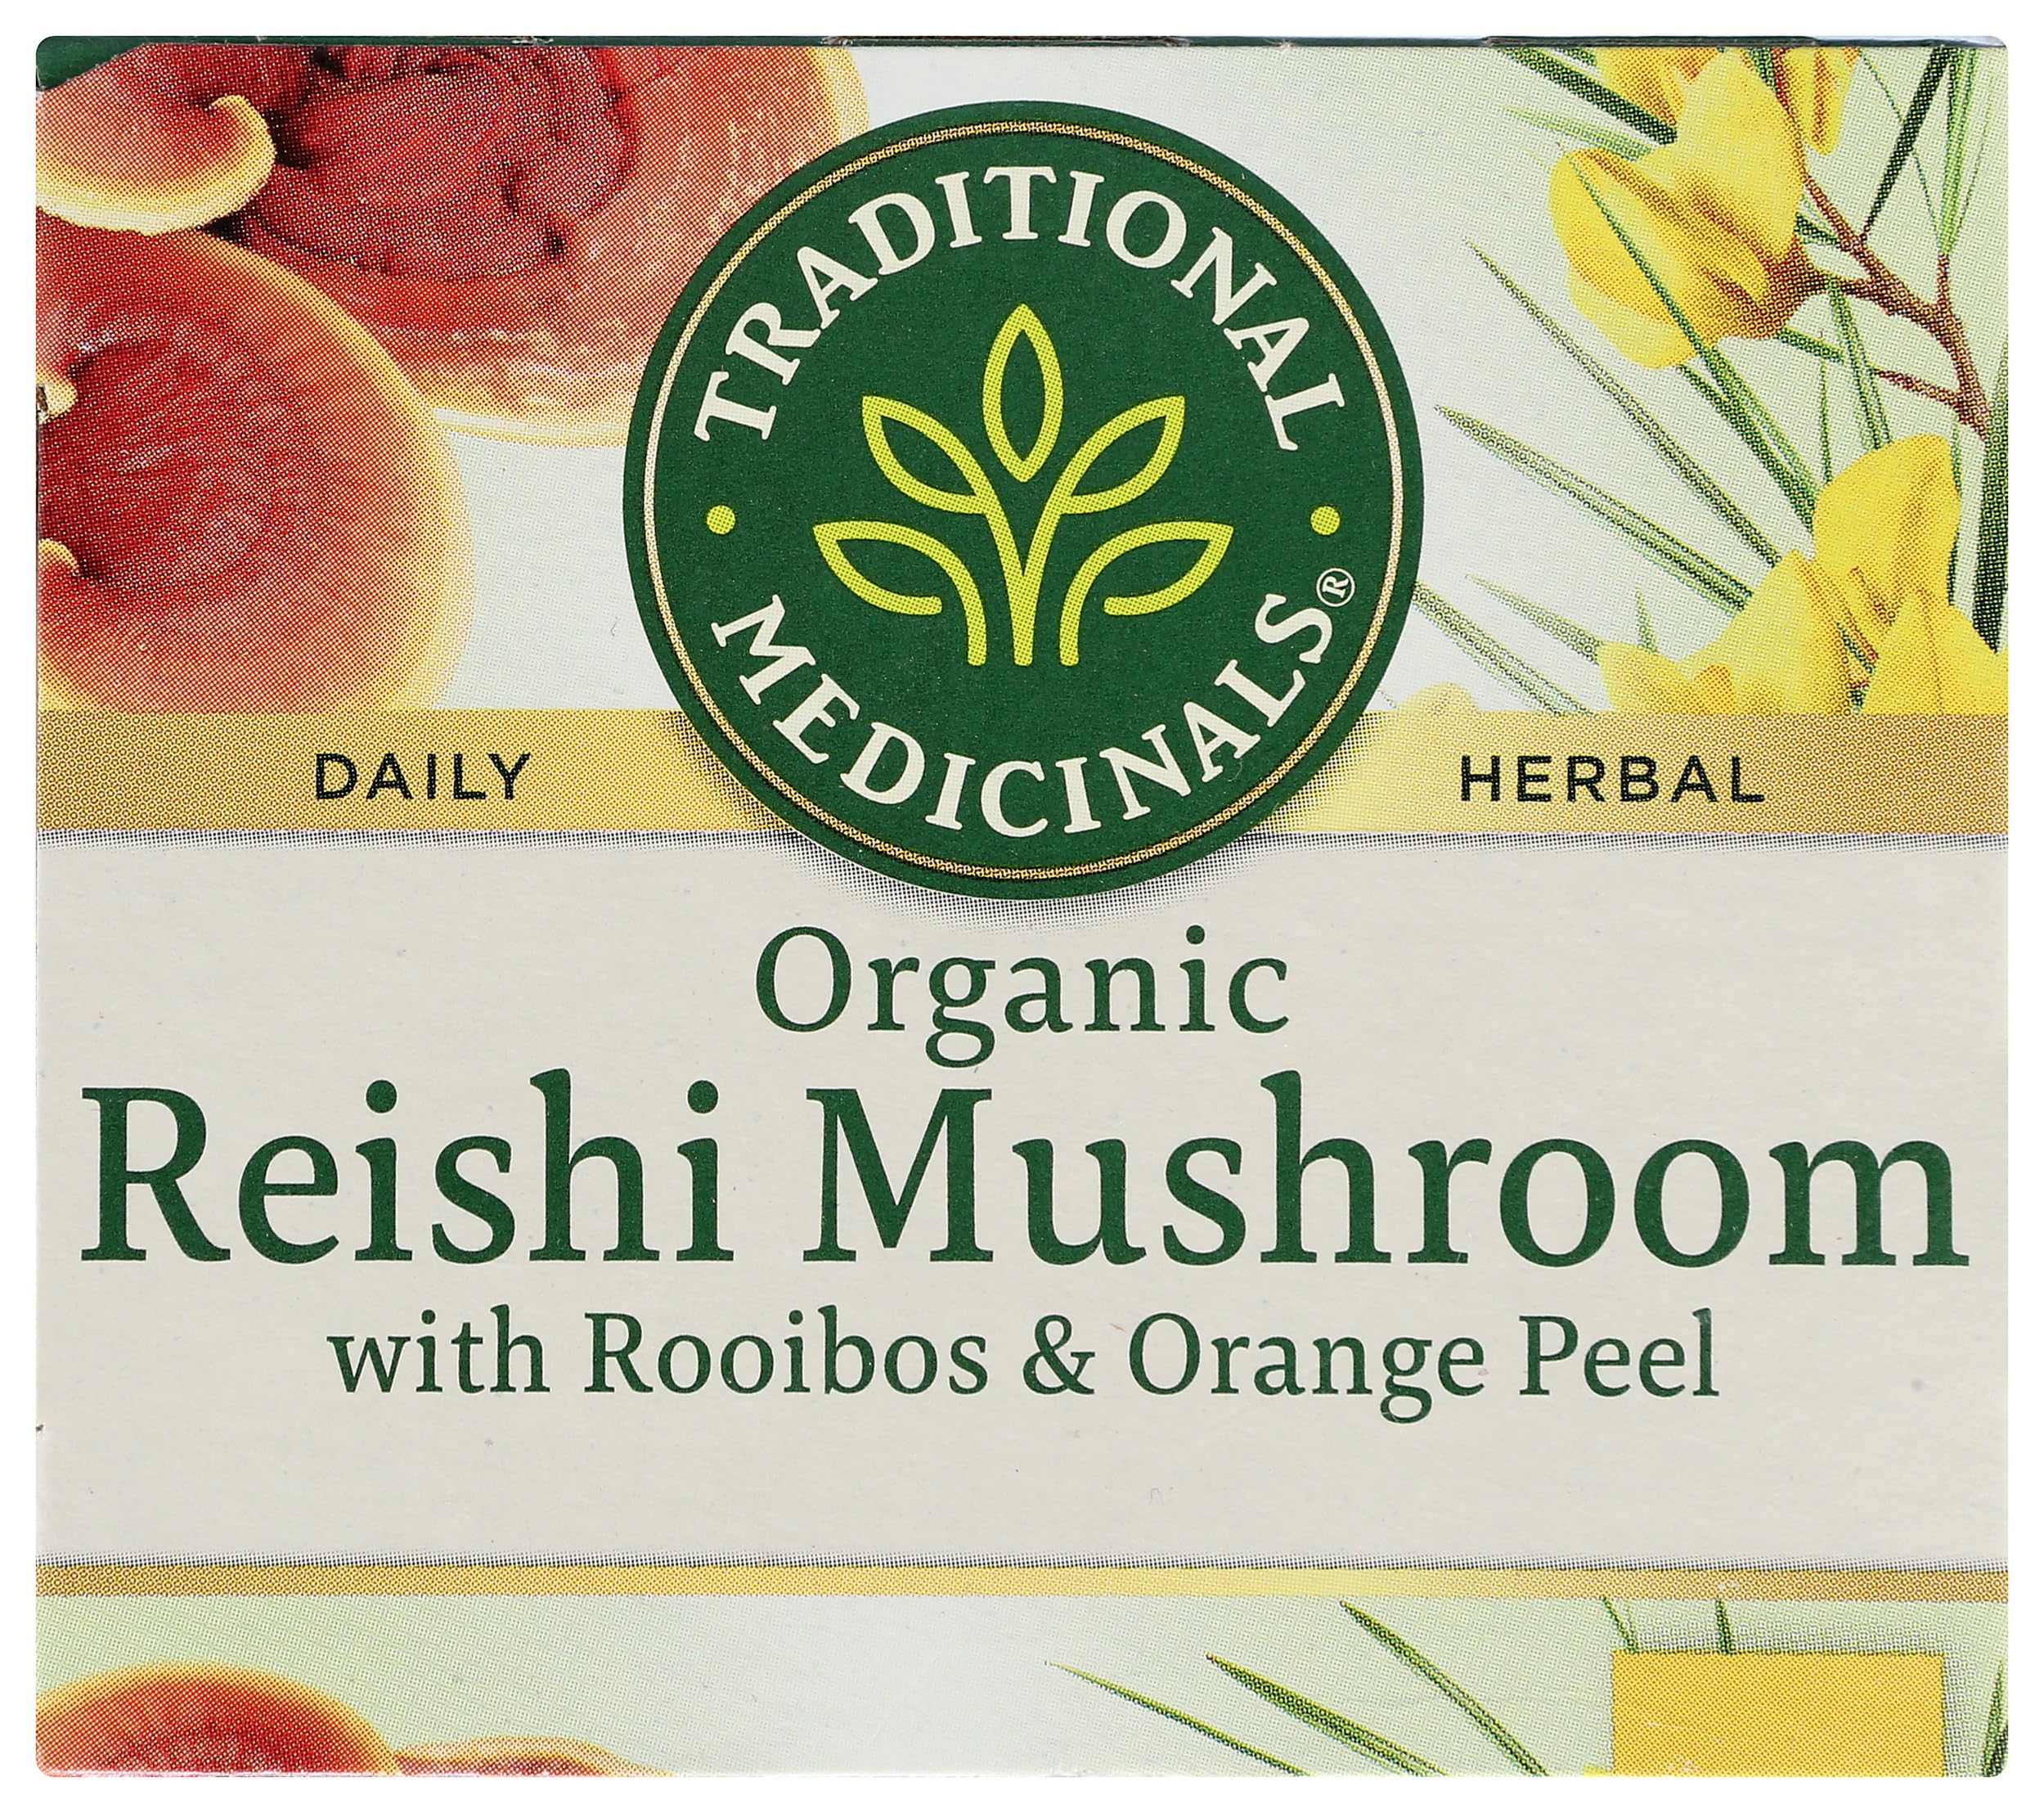 Traditional Medicinals, Organic Reishi Mushroom Tea, 16 Count